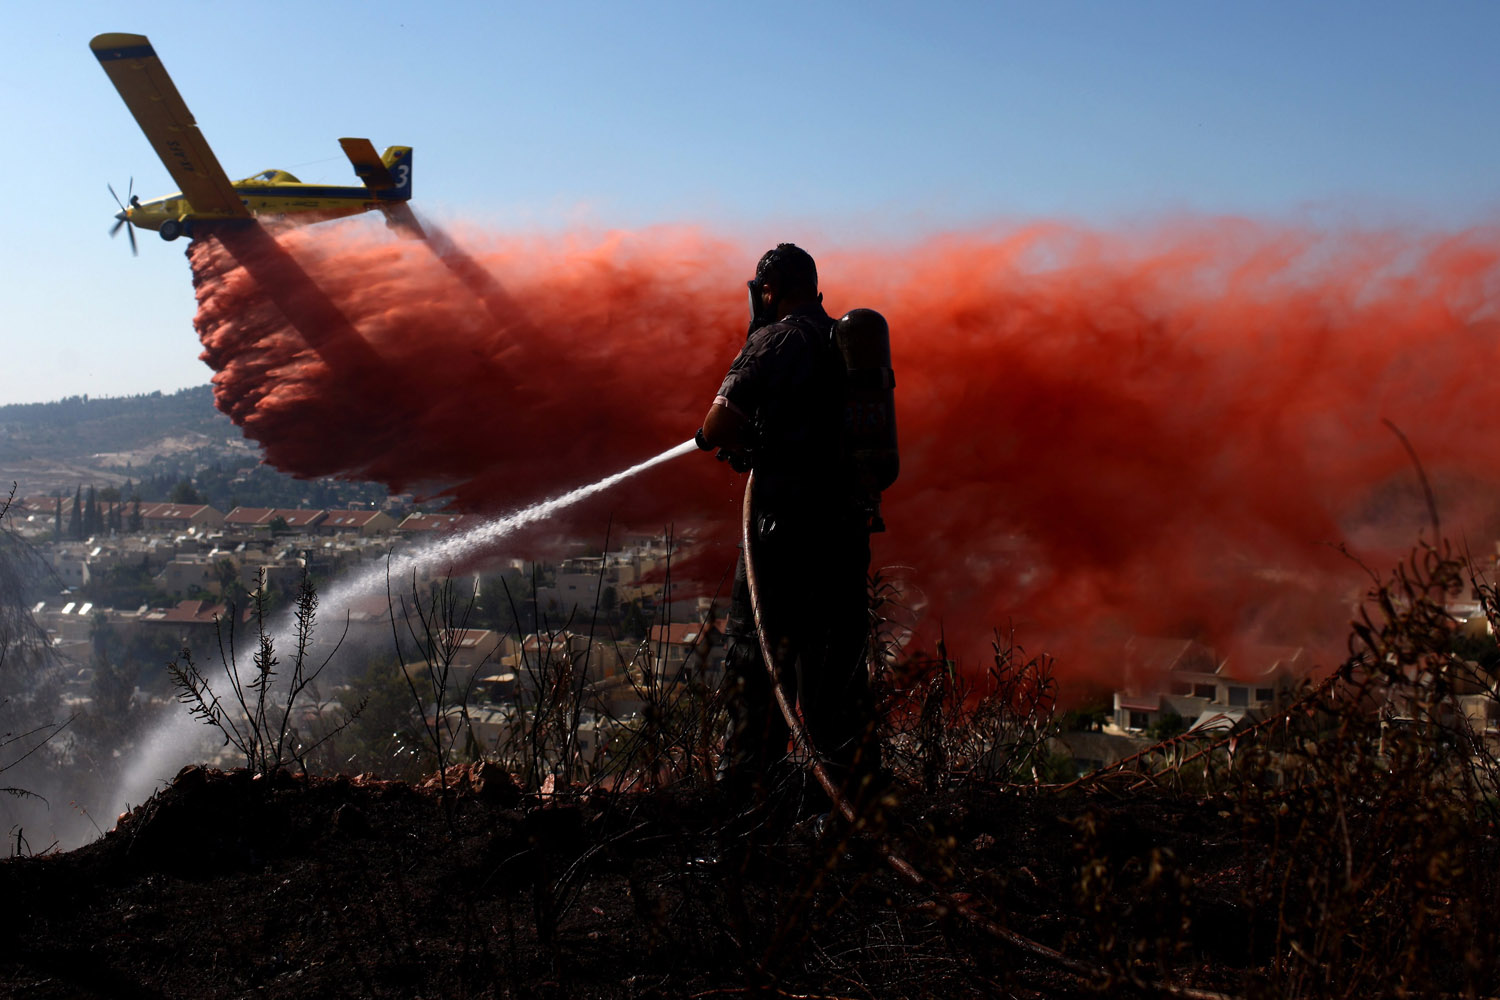 July 15, 2012. A firefighting plane drops retardant on a forest fire burning near Ein Hemed, west of Jerusalem, Israel.